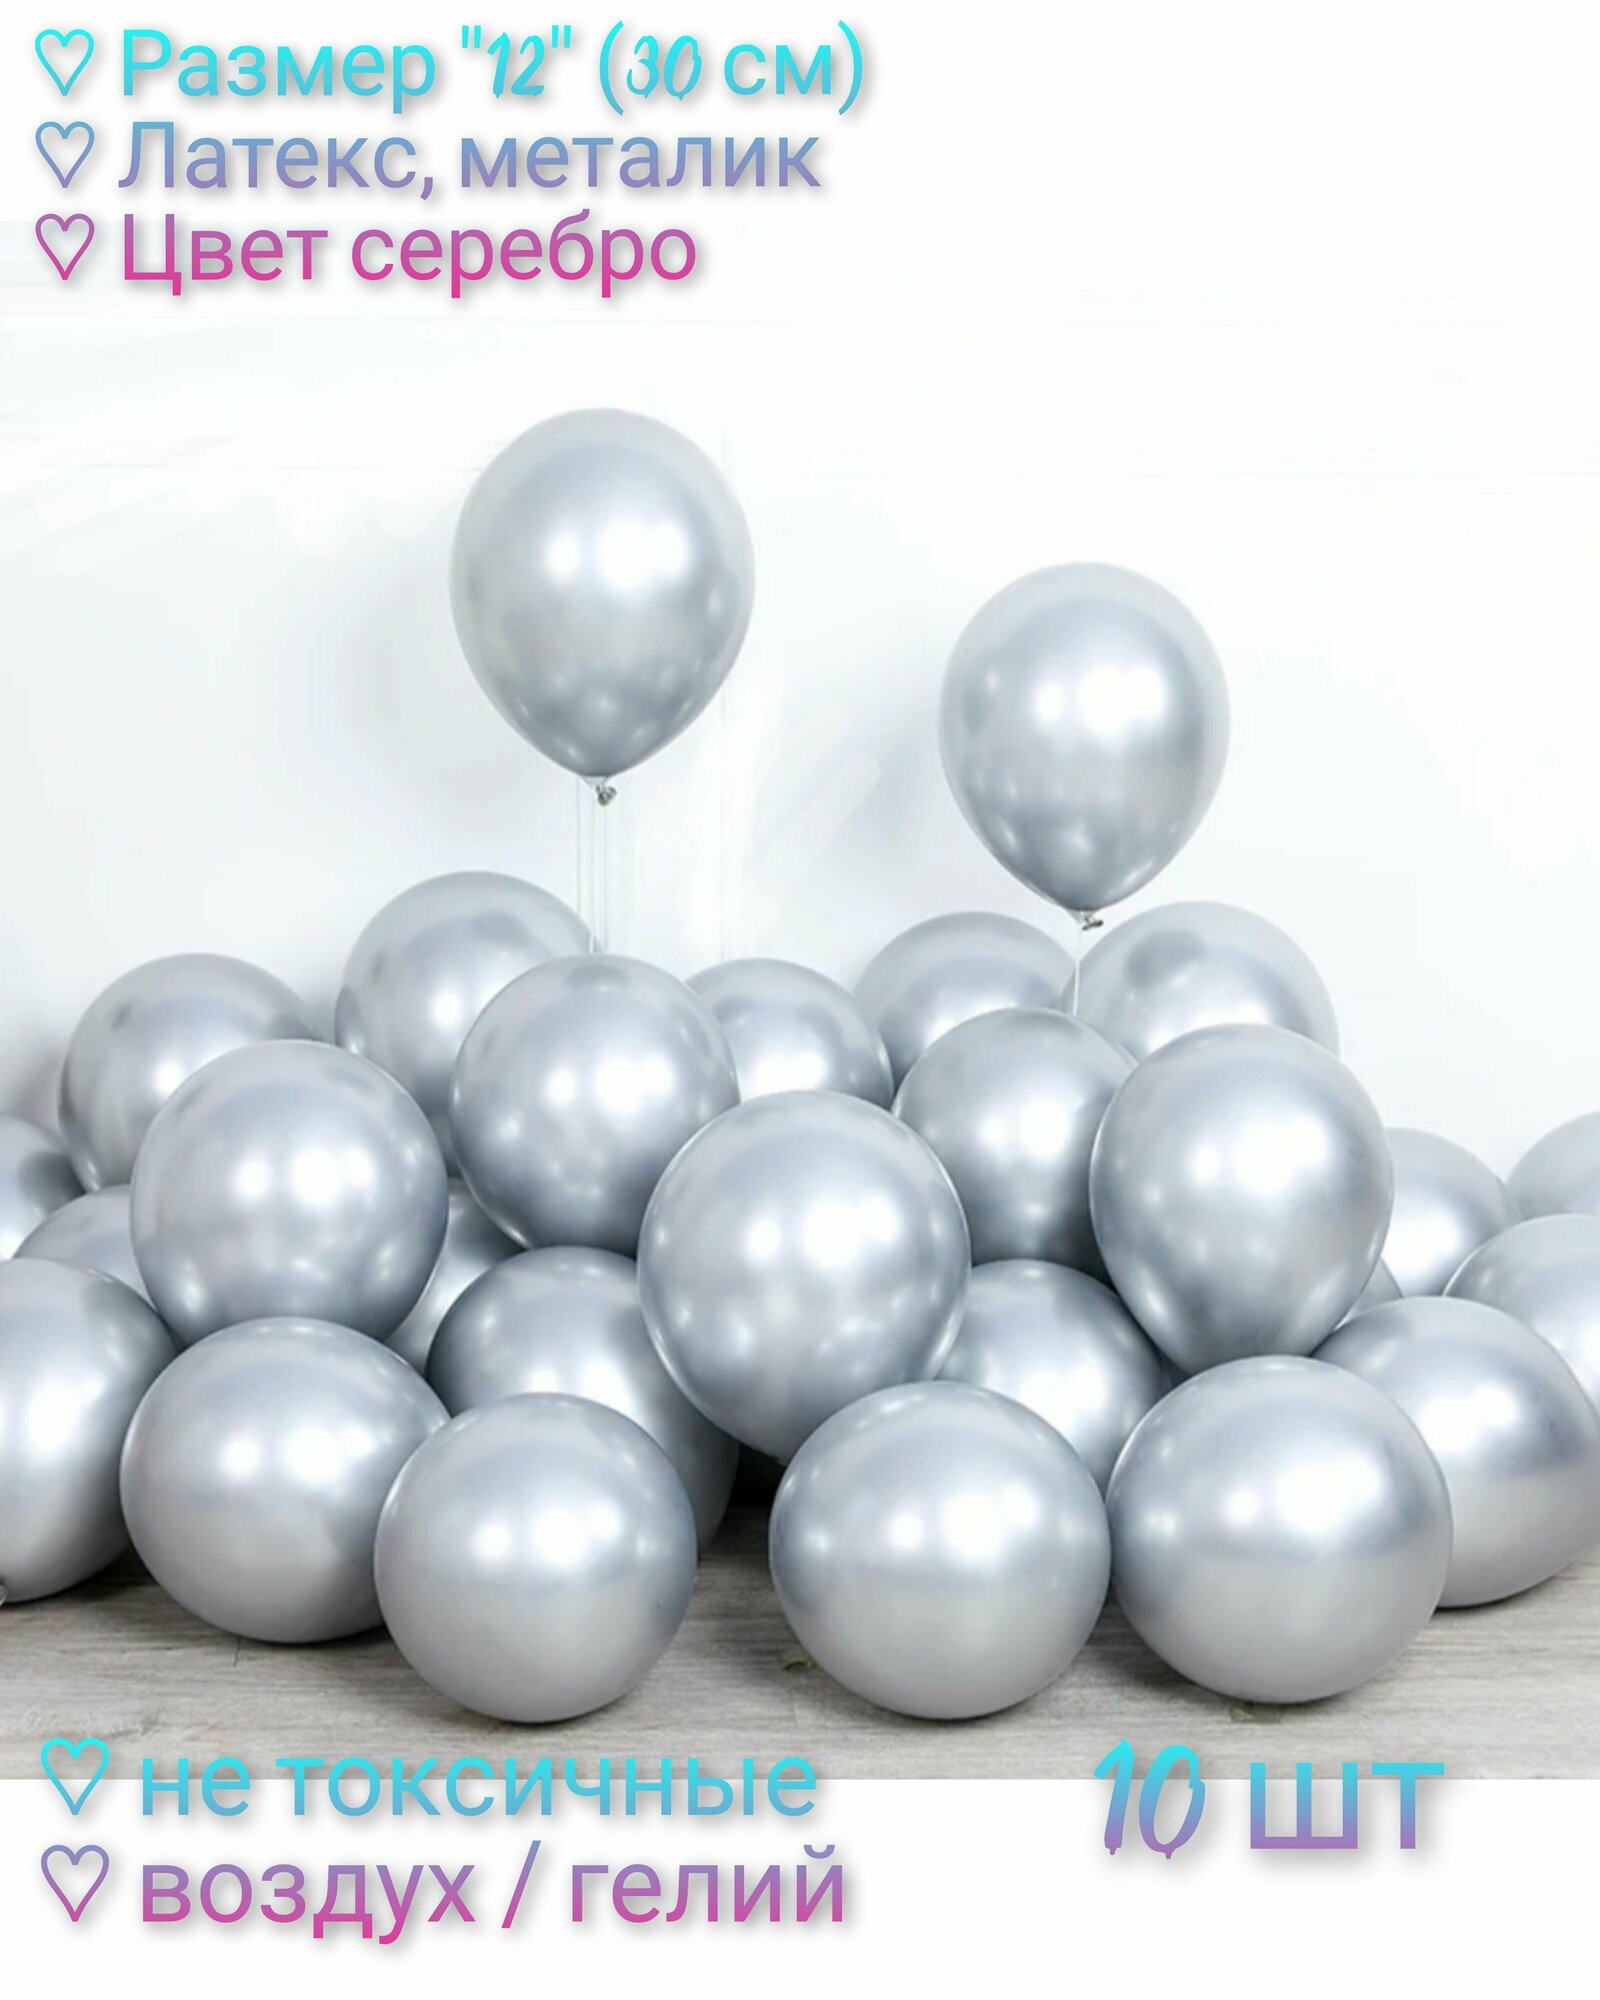 Набор Воздушных шаров "12" (30 см) - 10 шт, латекс, металлик. Цвет серебро.